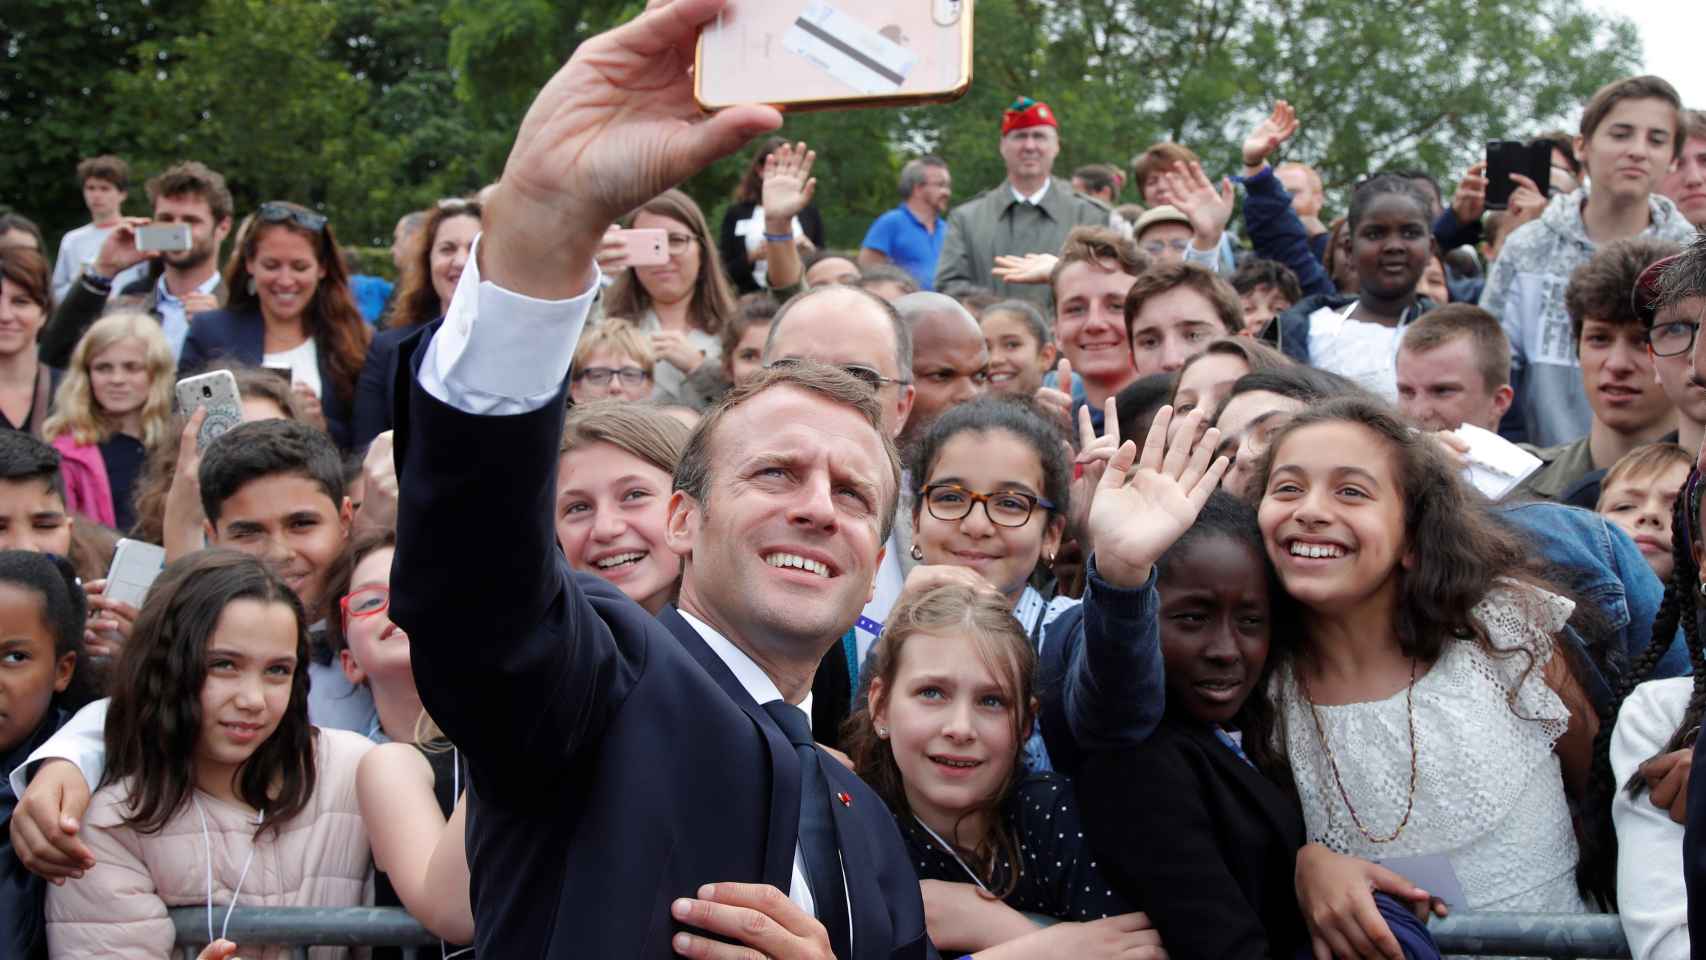 Macron se fotografía con un grupo de jóvenes en el 78 aniversario del Llamamiento del 18 de junio.